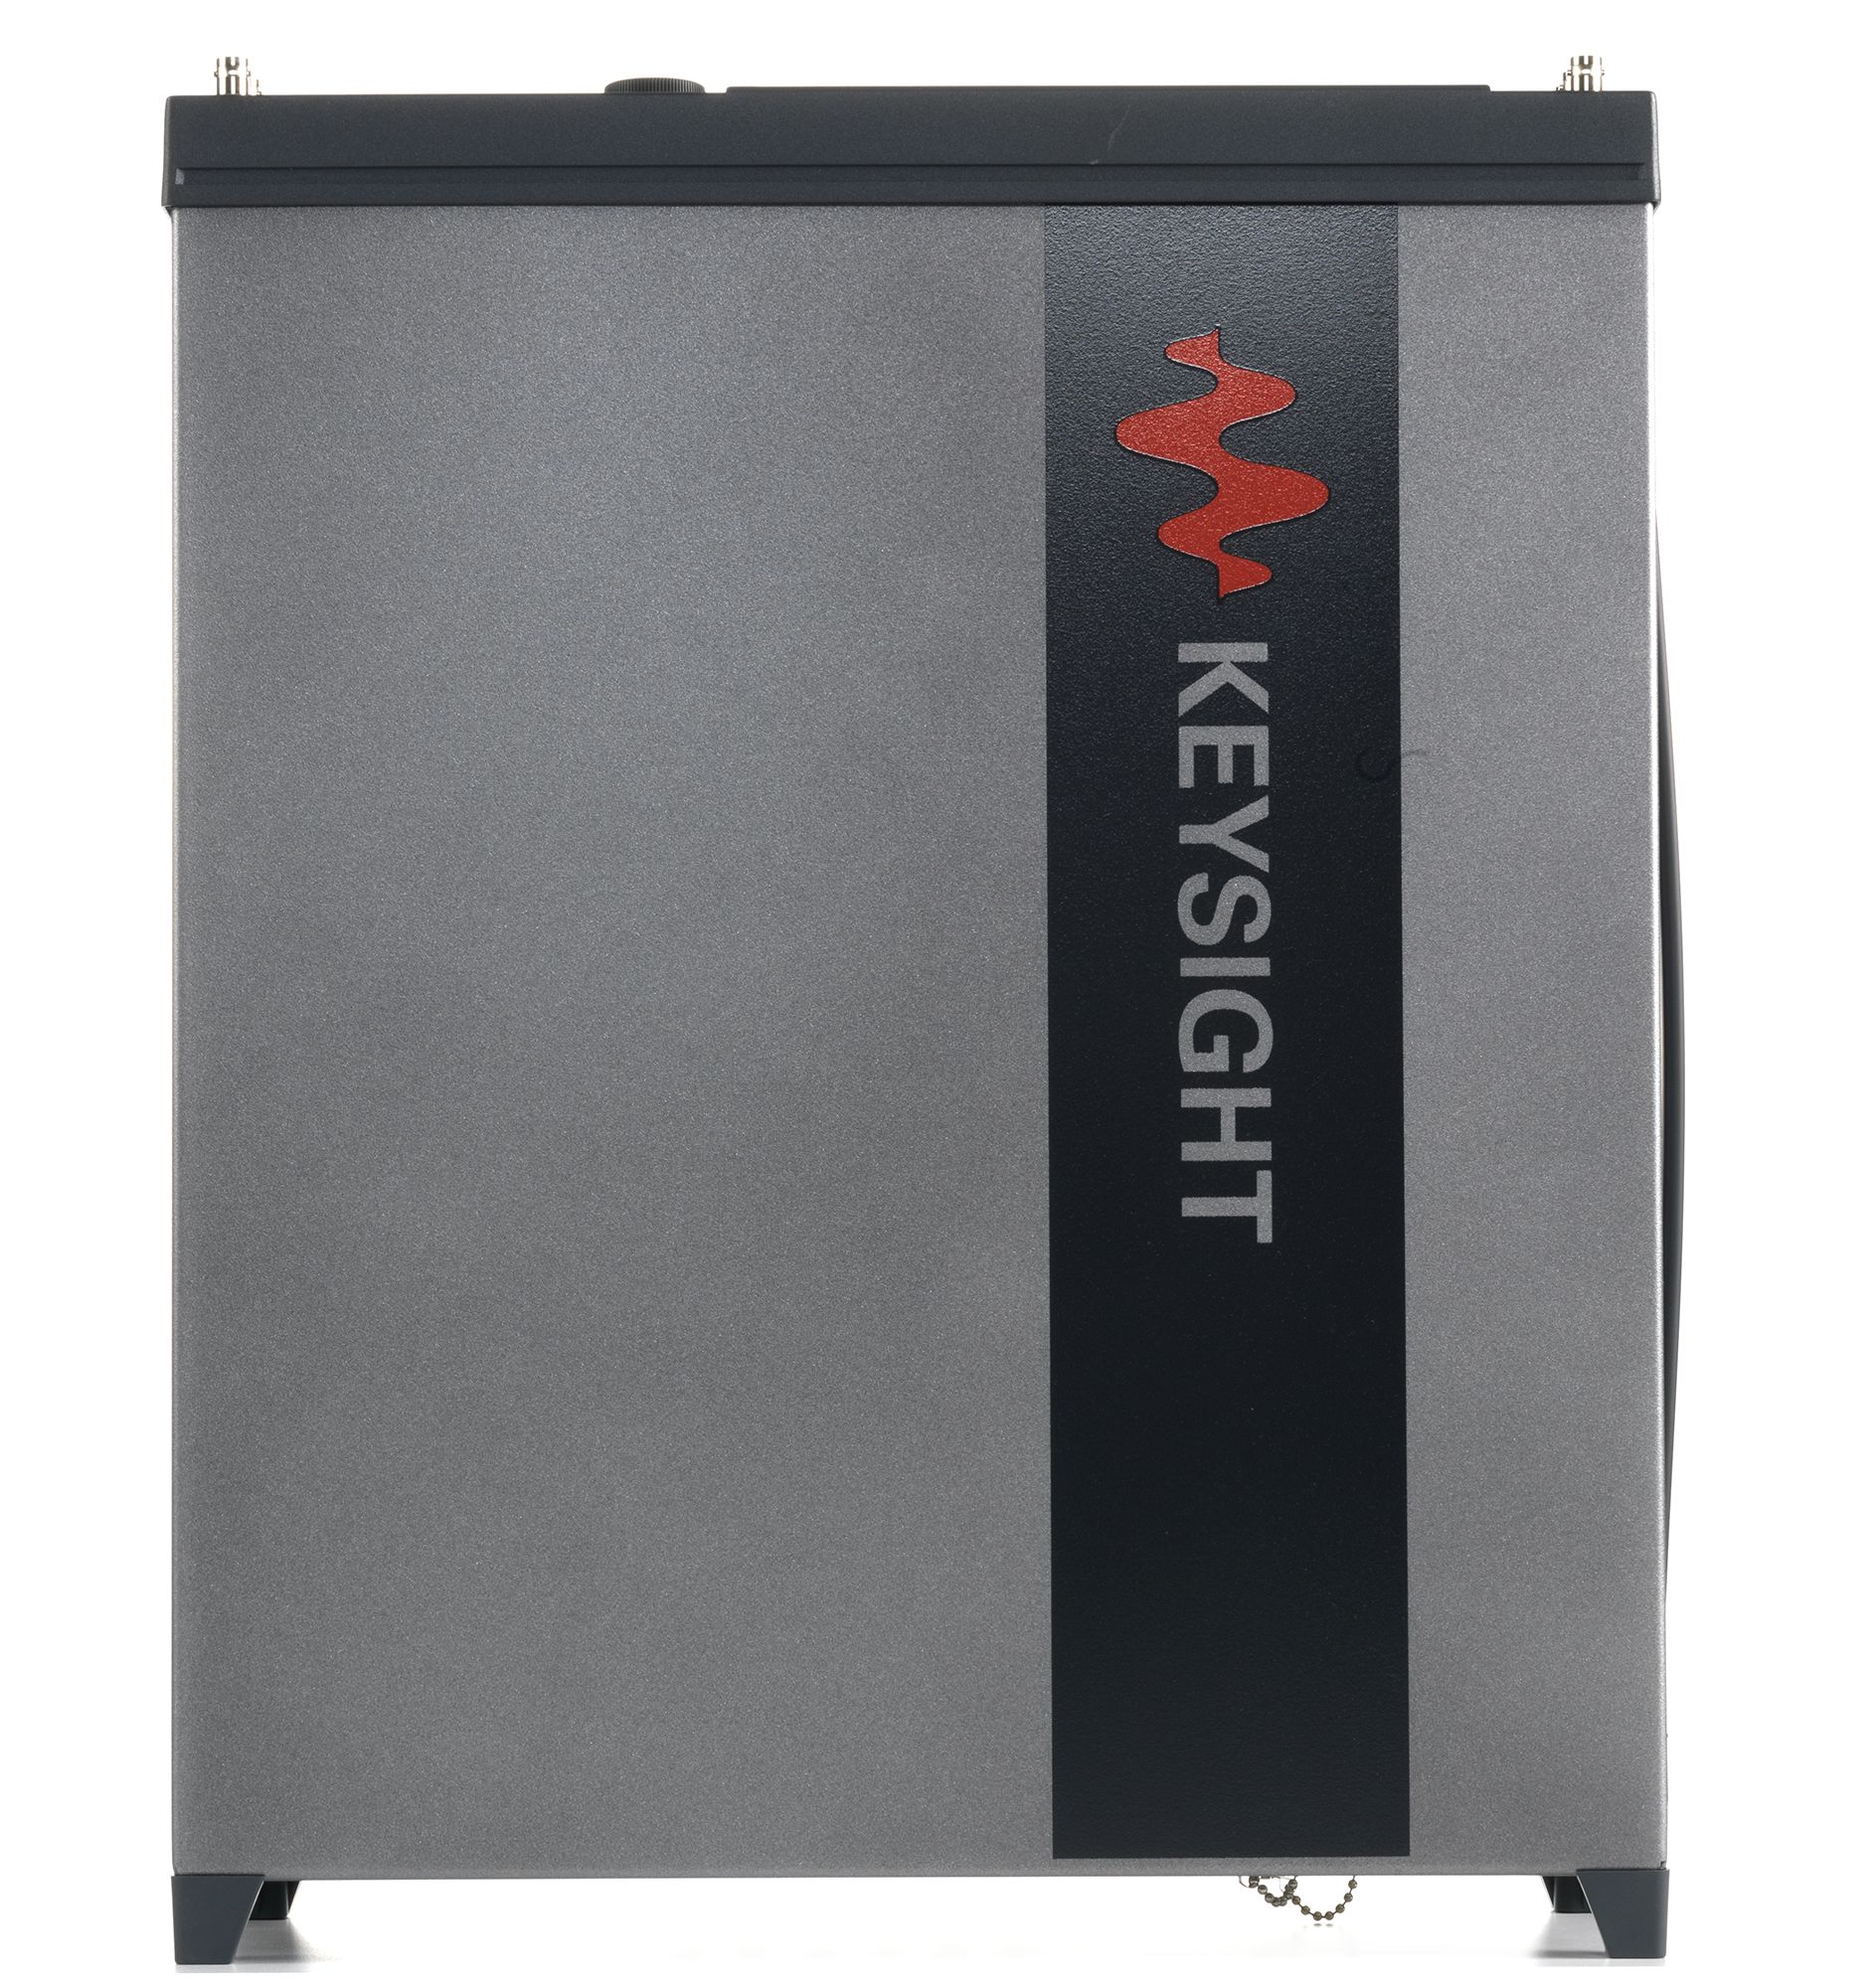 Keysight E8267D-544 250 kHz to 44 GHz